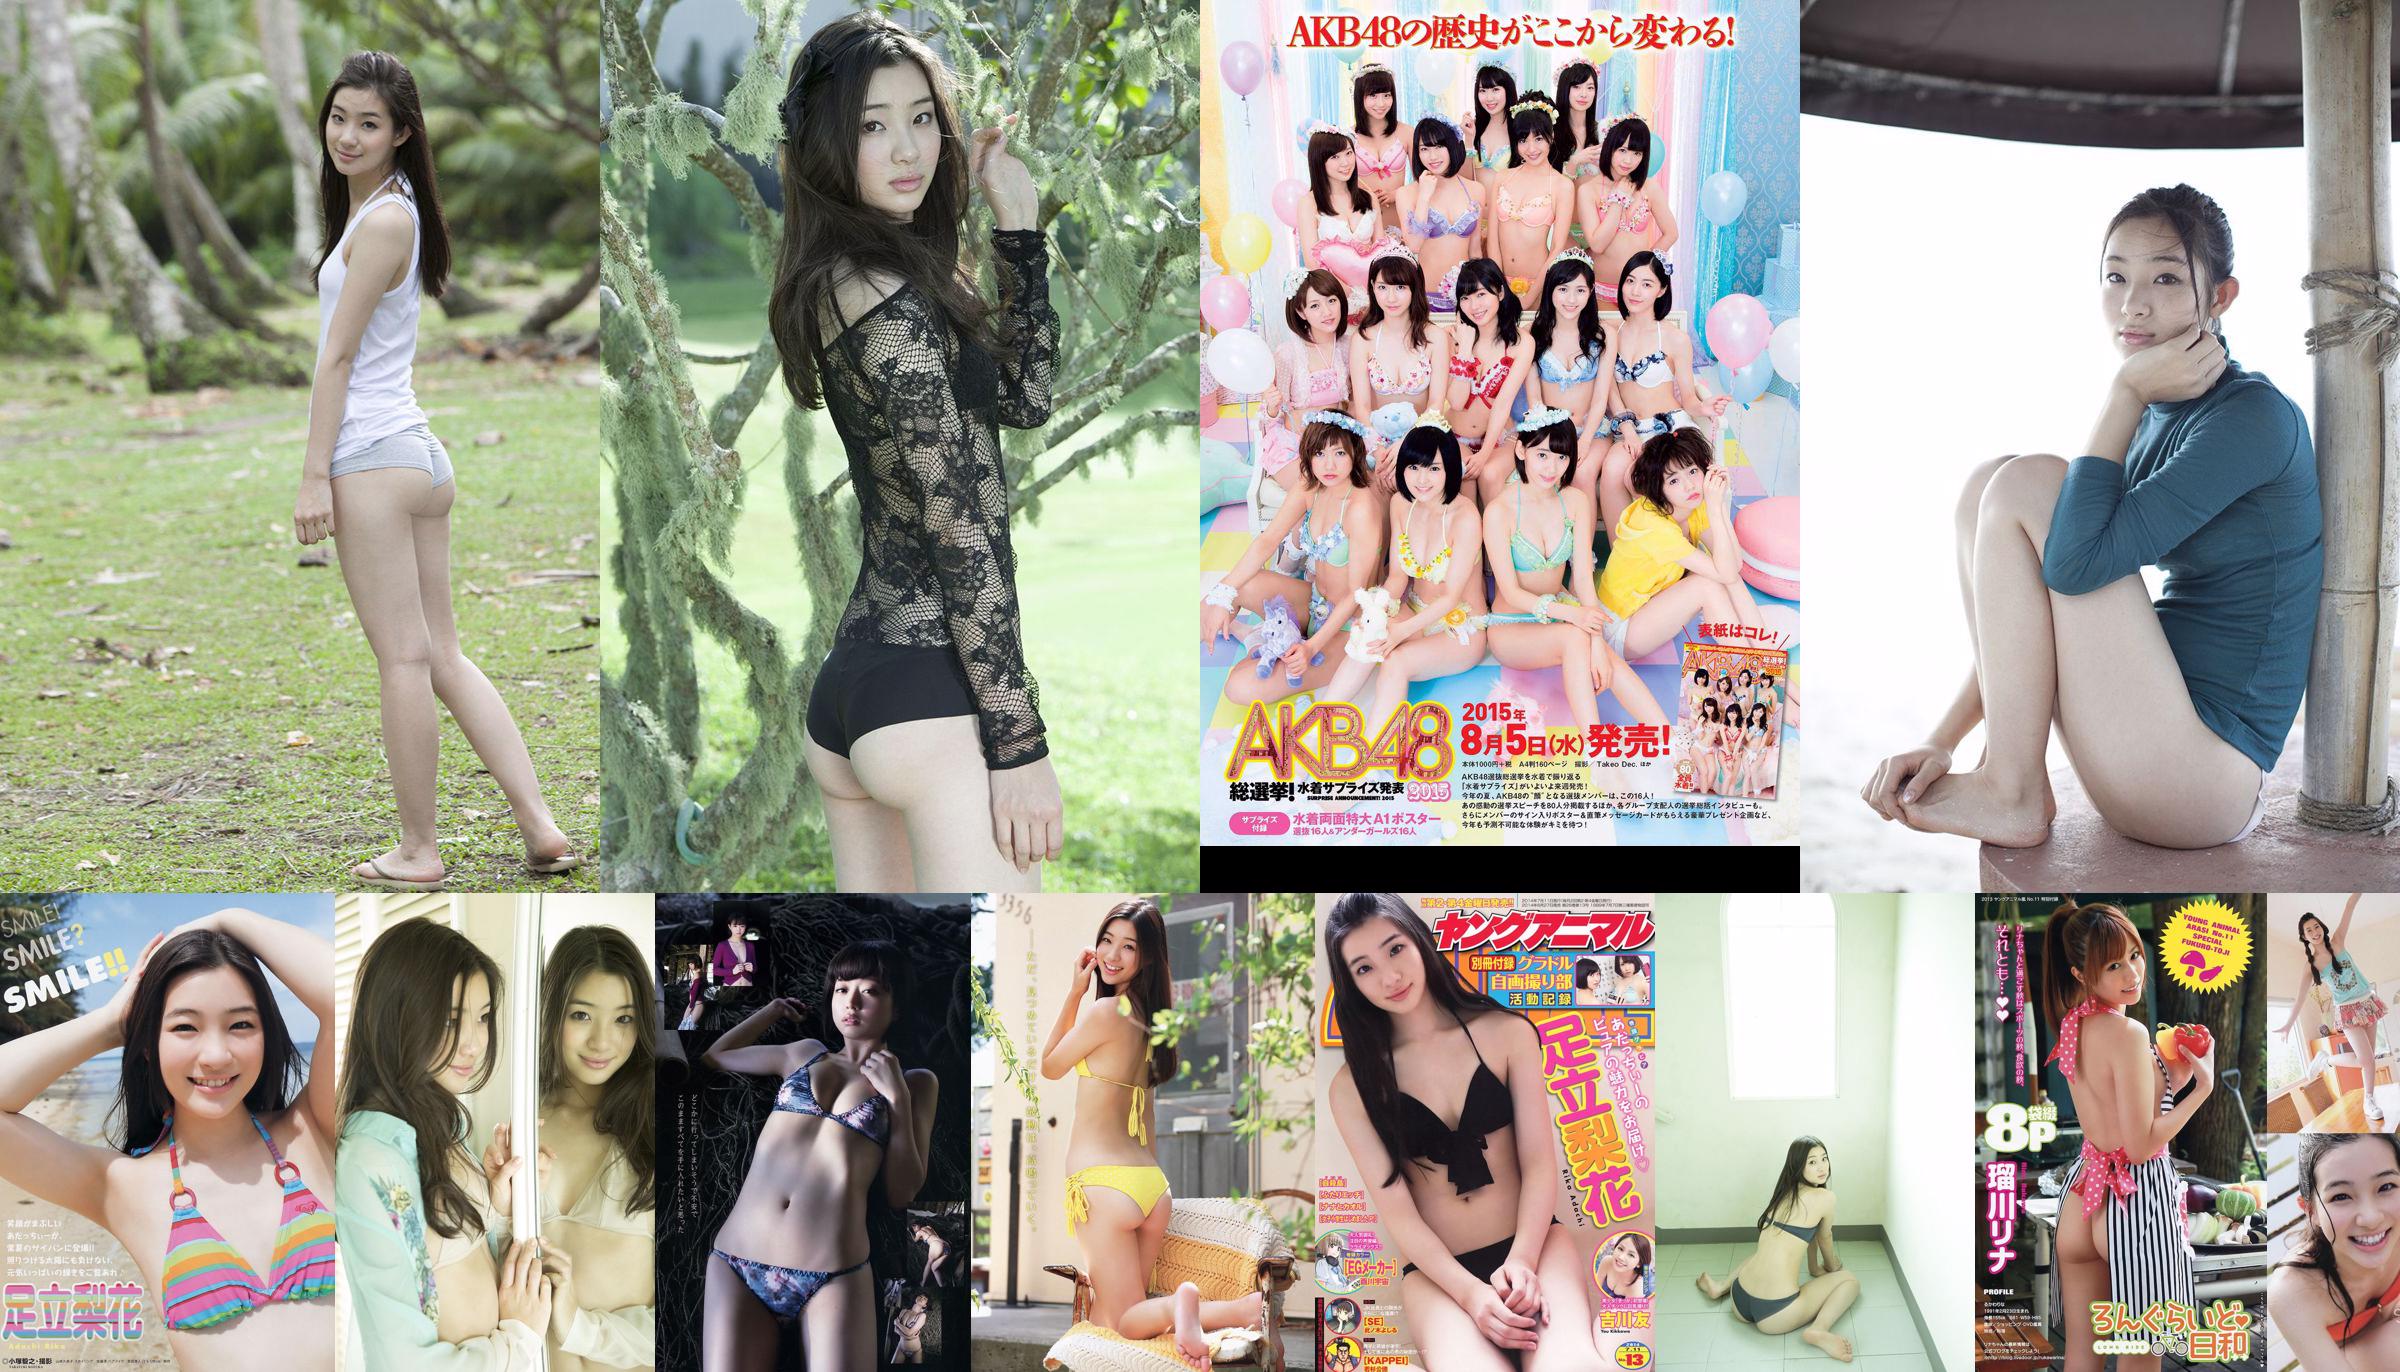 Adachi Rika, Kiya Takeshi, 瑠 川 リ ナ [Young Animal Arashi Special Issue] Tạp chí ảnh số 11 năm 2013 No.15d0f5 Trang 4